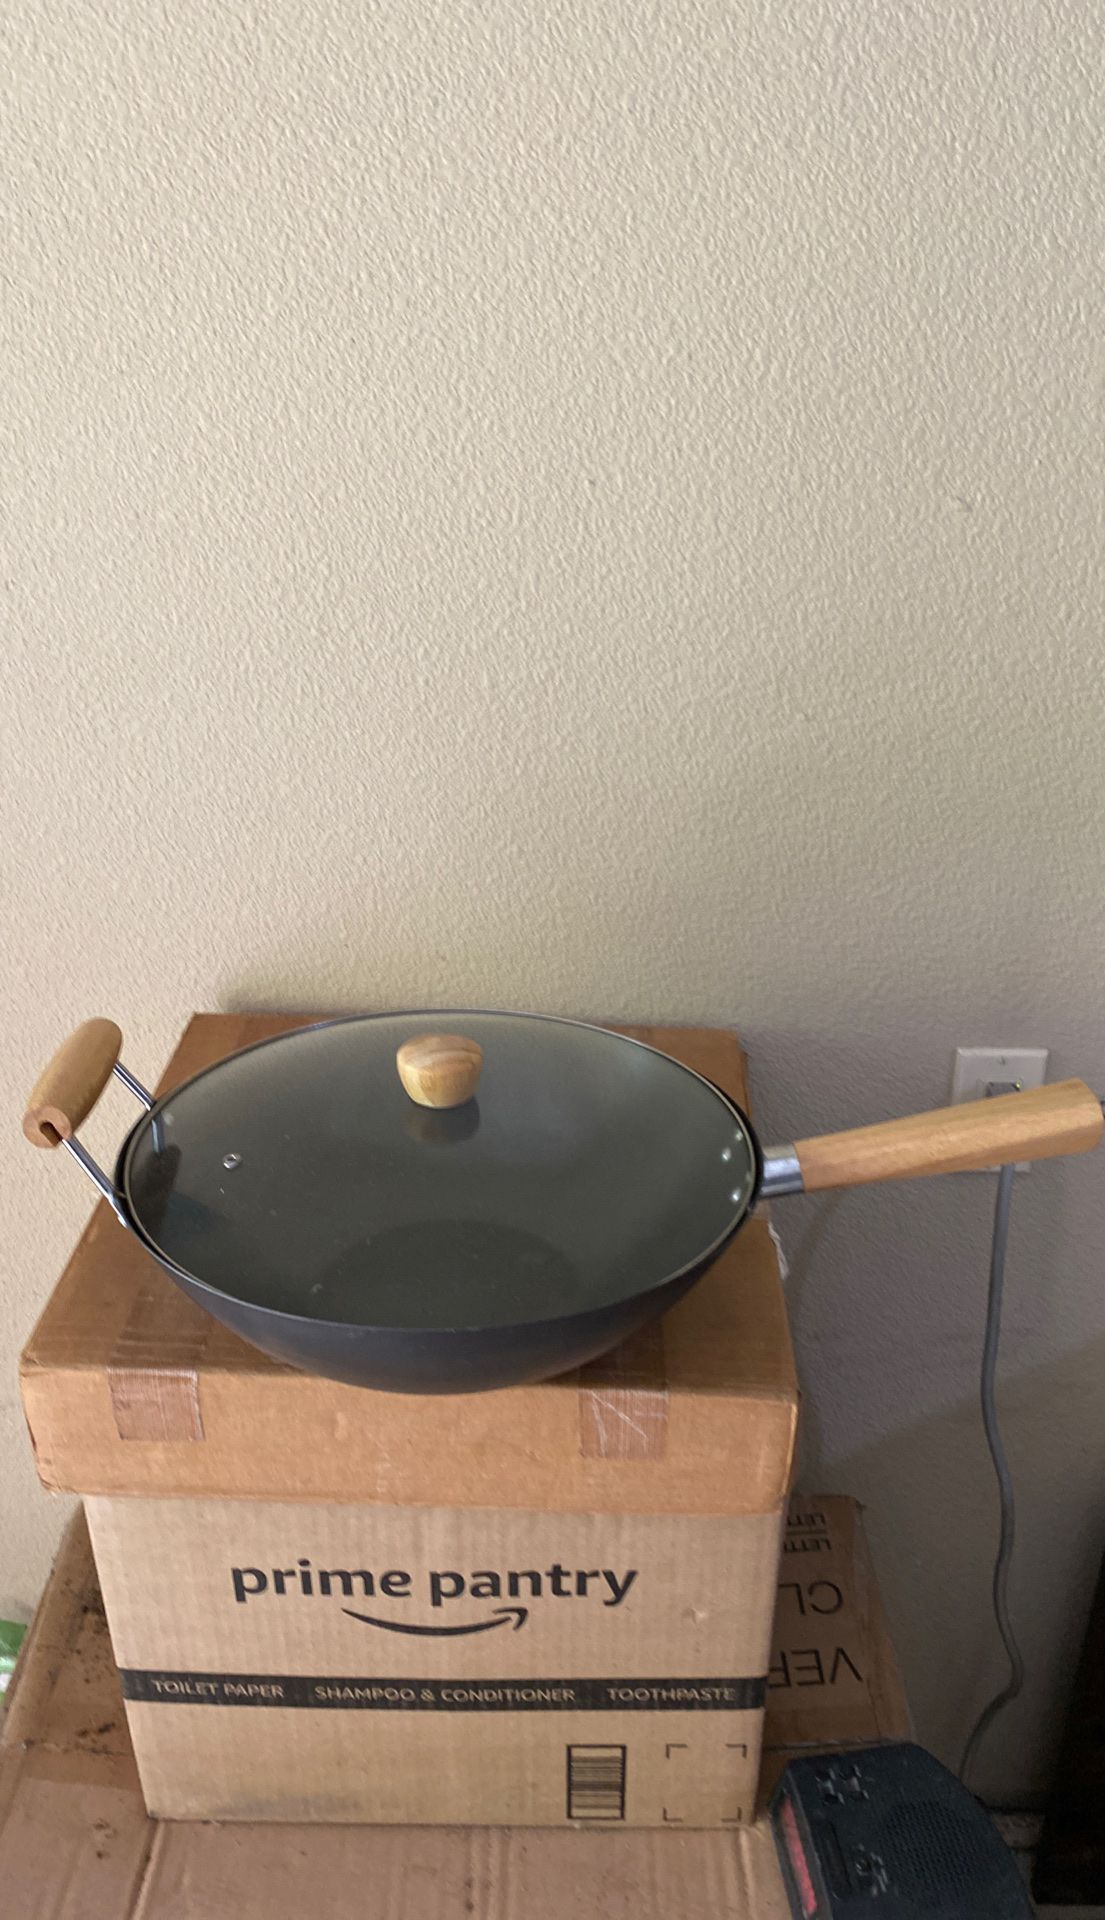 New wok, cooking pan.